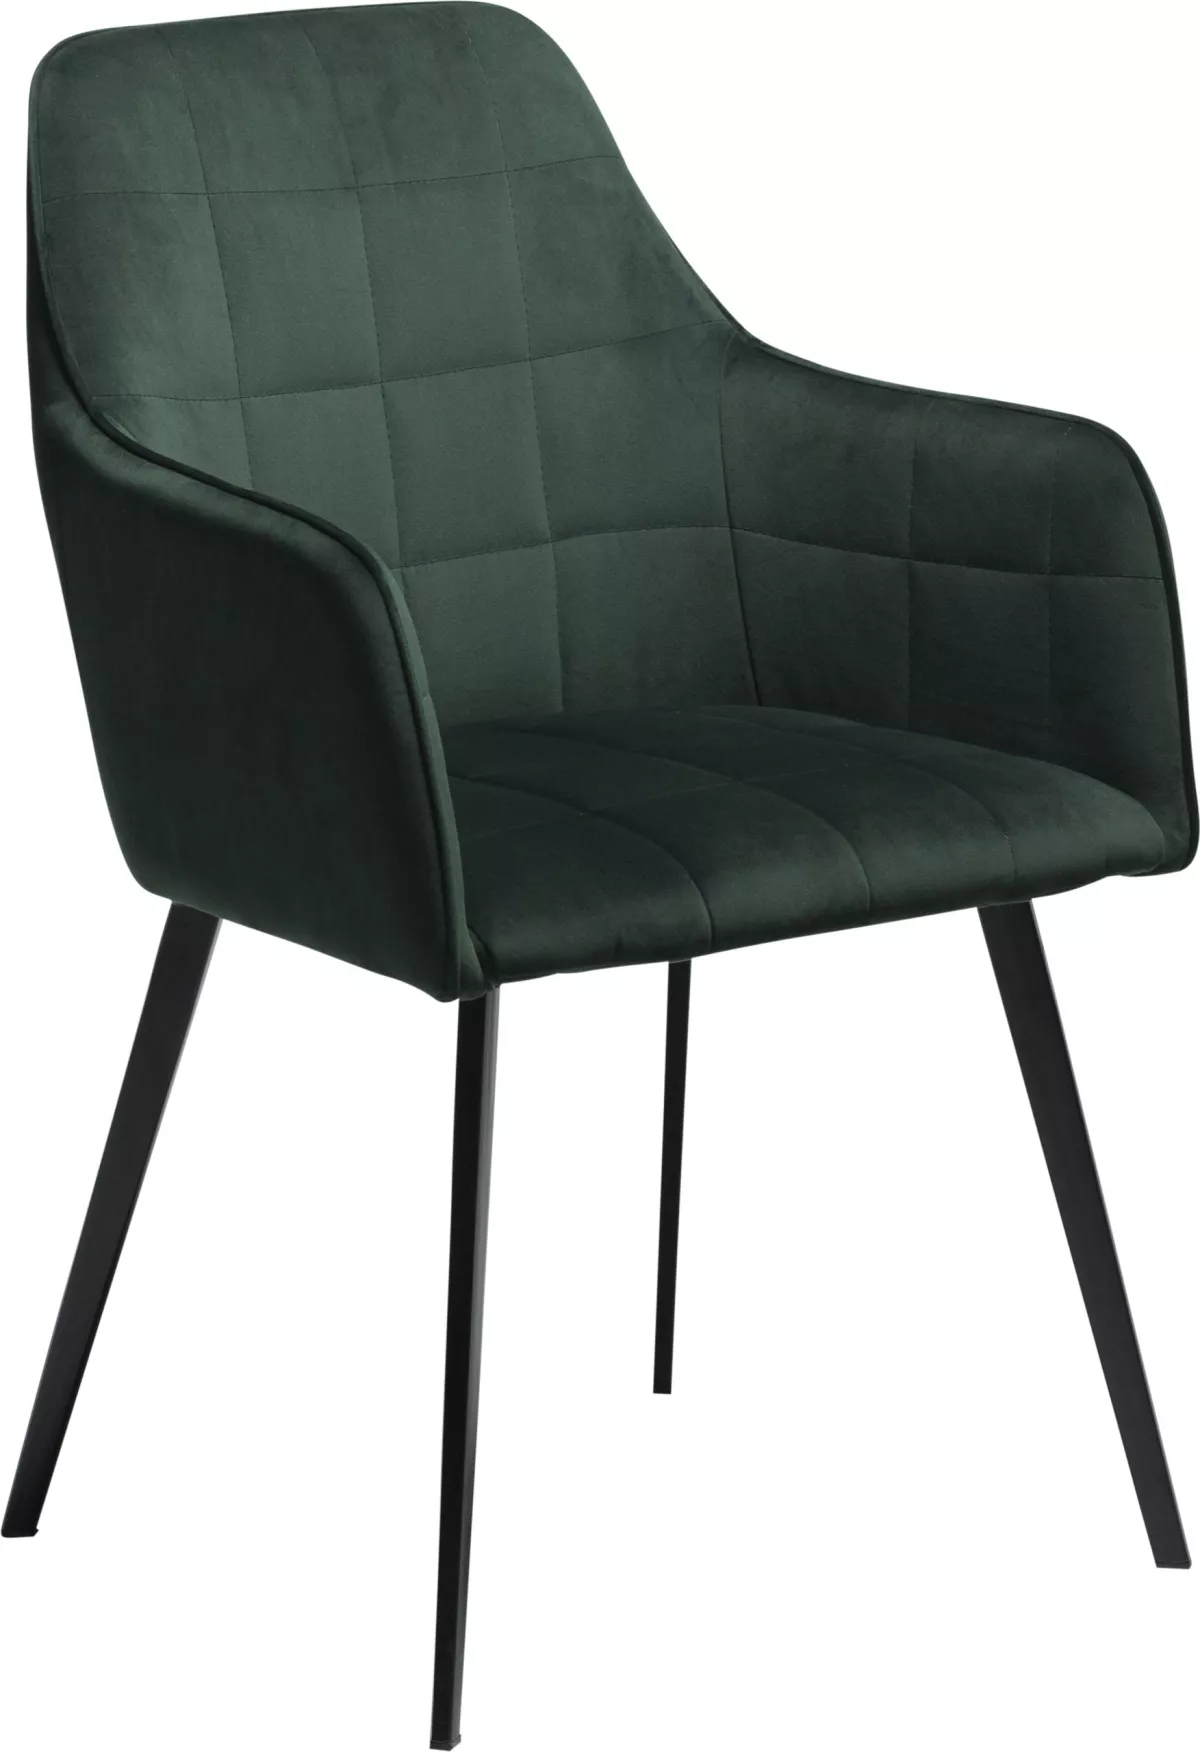 #2 - Embrace, Spisebordsstol med armlæn, Fløjl by DAN-FORM Denmark (H: 84 cm. B: 55 cm., Grøn/Sort)